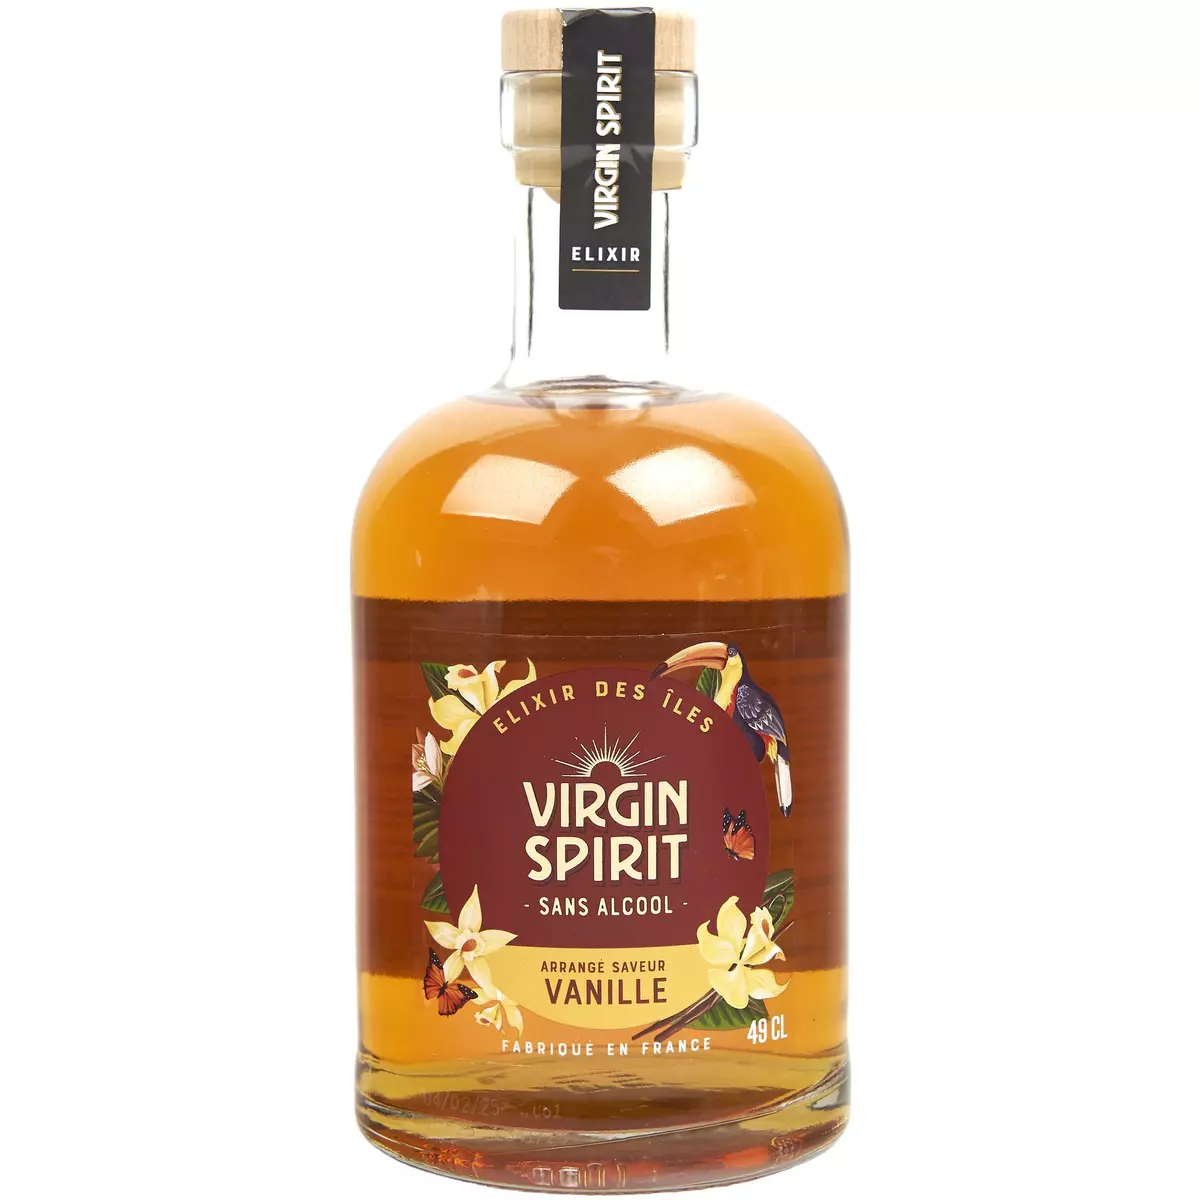 VIRGIN SPIRIT Elixir des îles arrangé saveur vanille 49cl